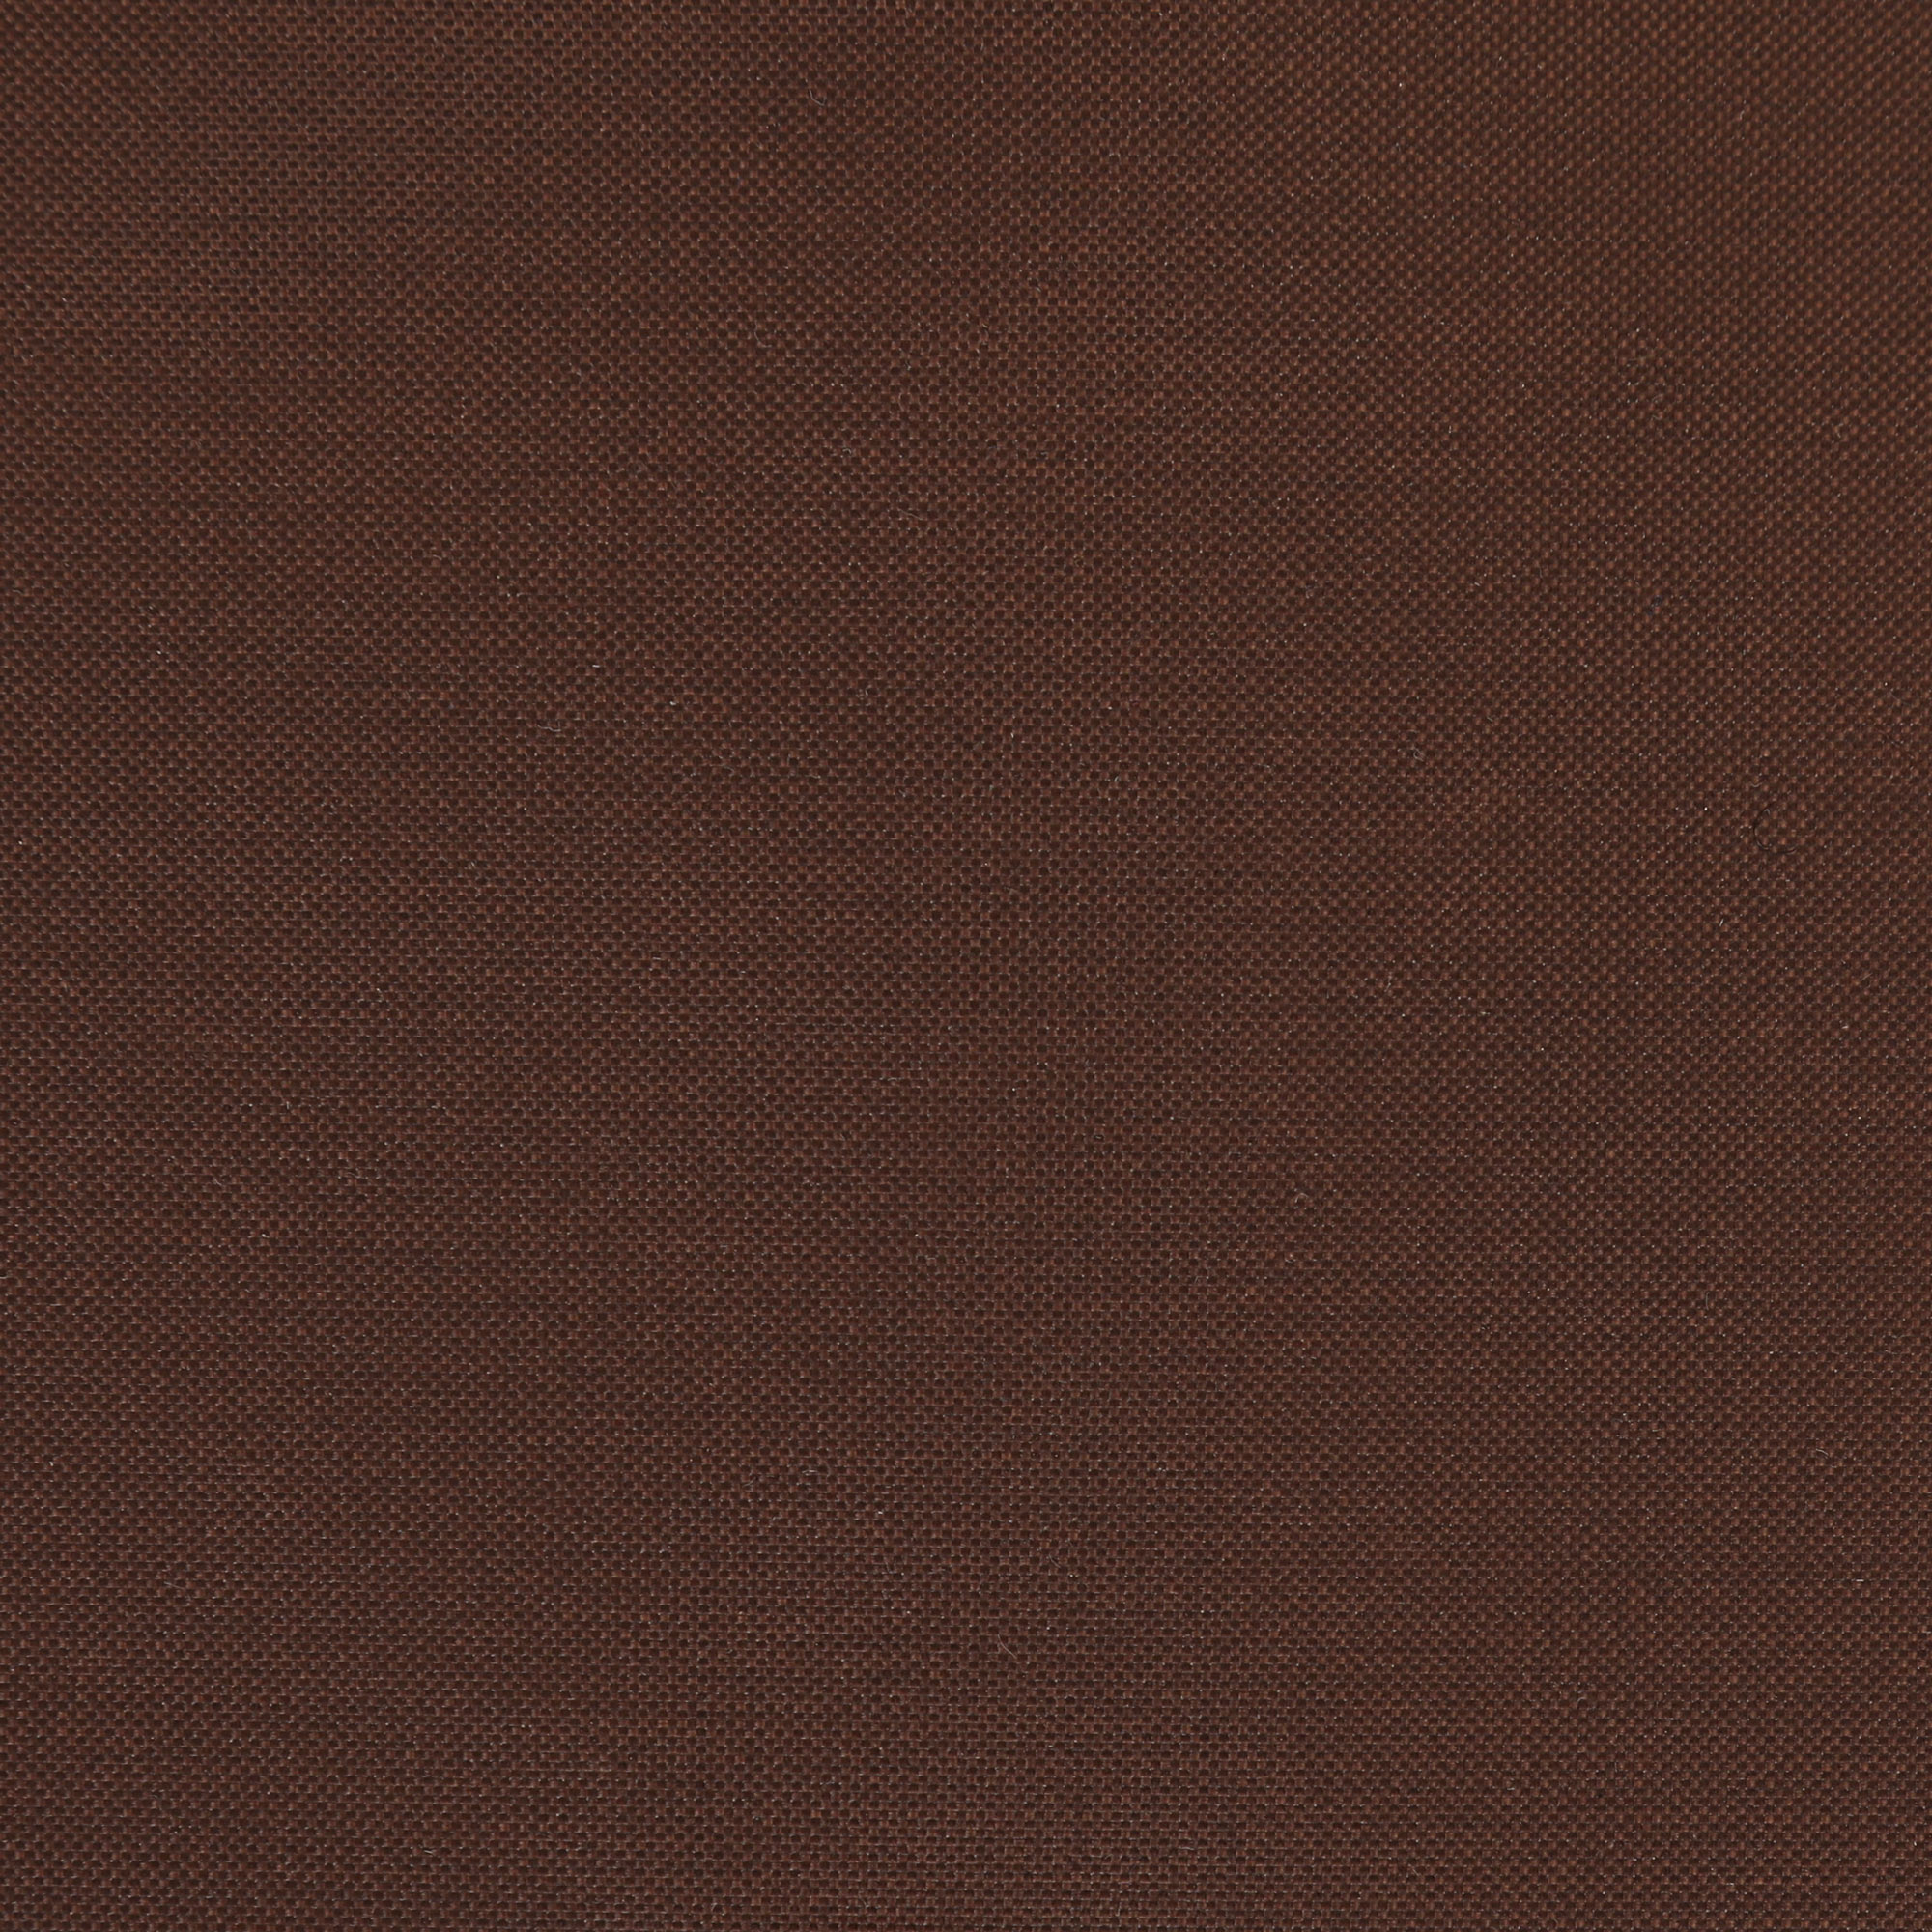 Чеxол для стола Profgarden 185x185x65 см, цвет коричневый - фото 5